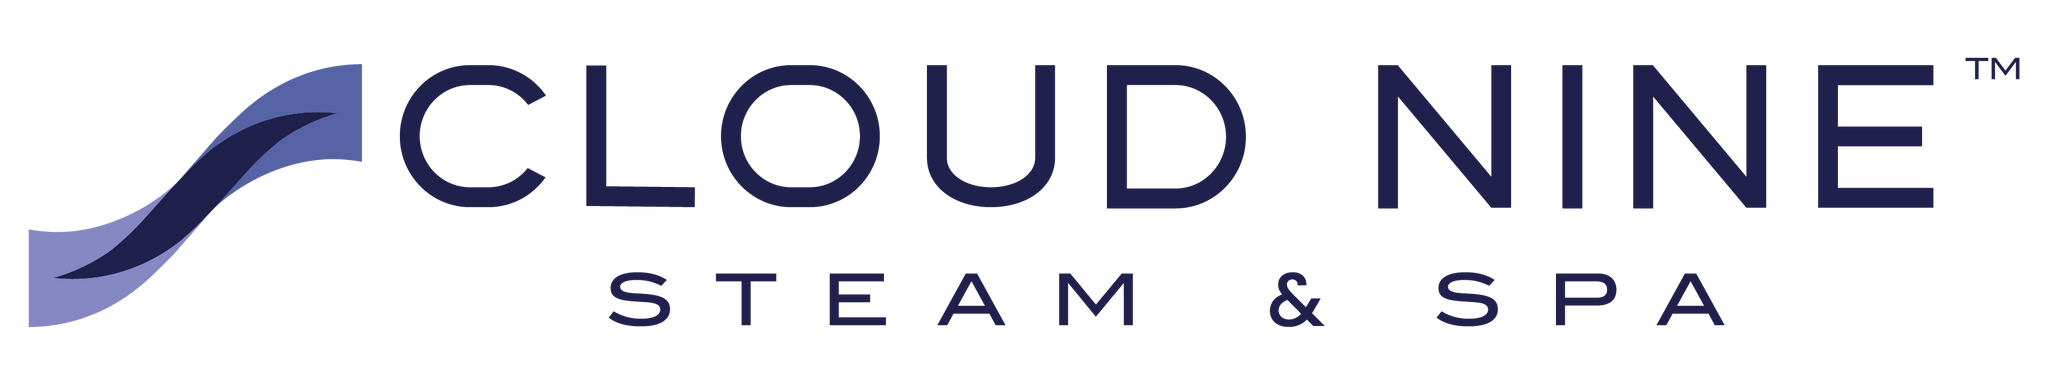 Cloud Nine Steam & Spa Logo